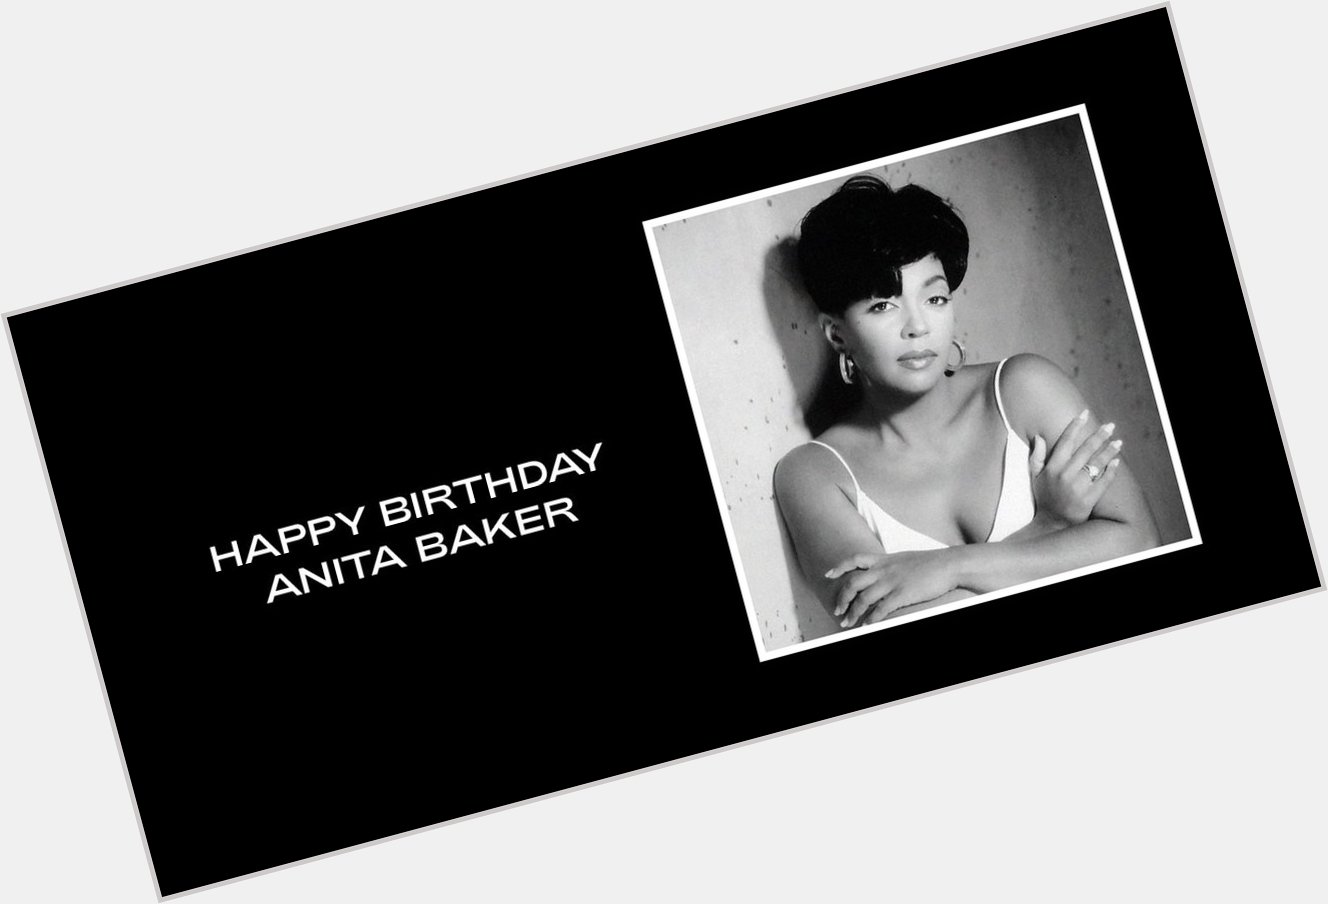  Happy Birthday Anita Baker  